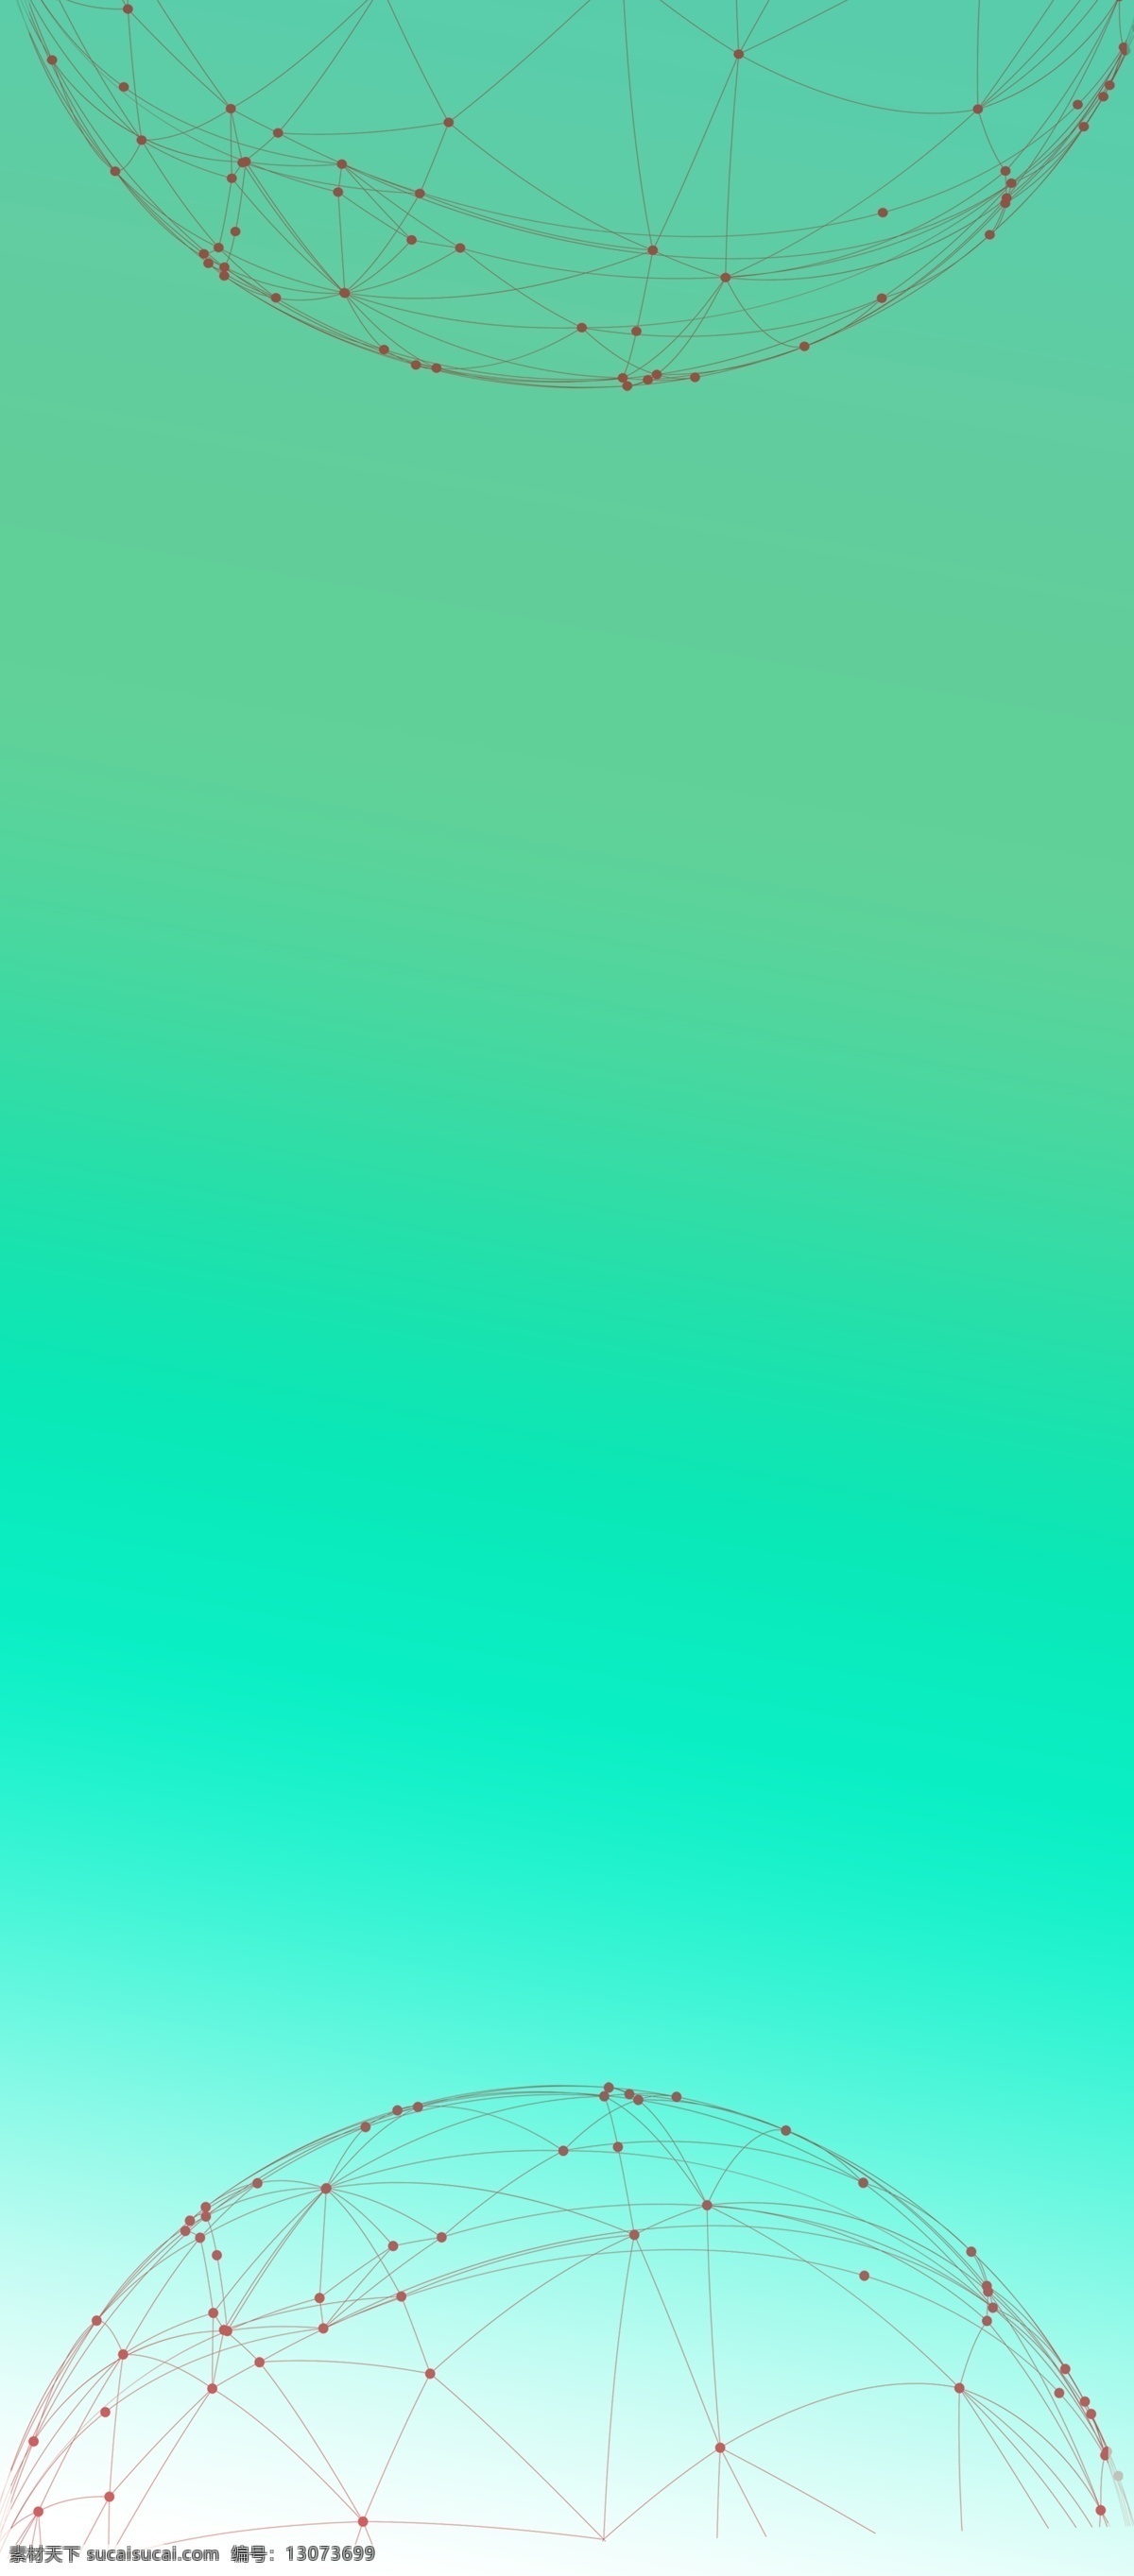 蓝绿色 渐变 背景 抽象背景 半圆形网状物